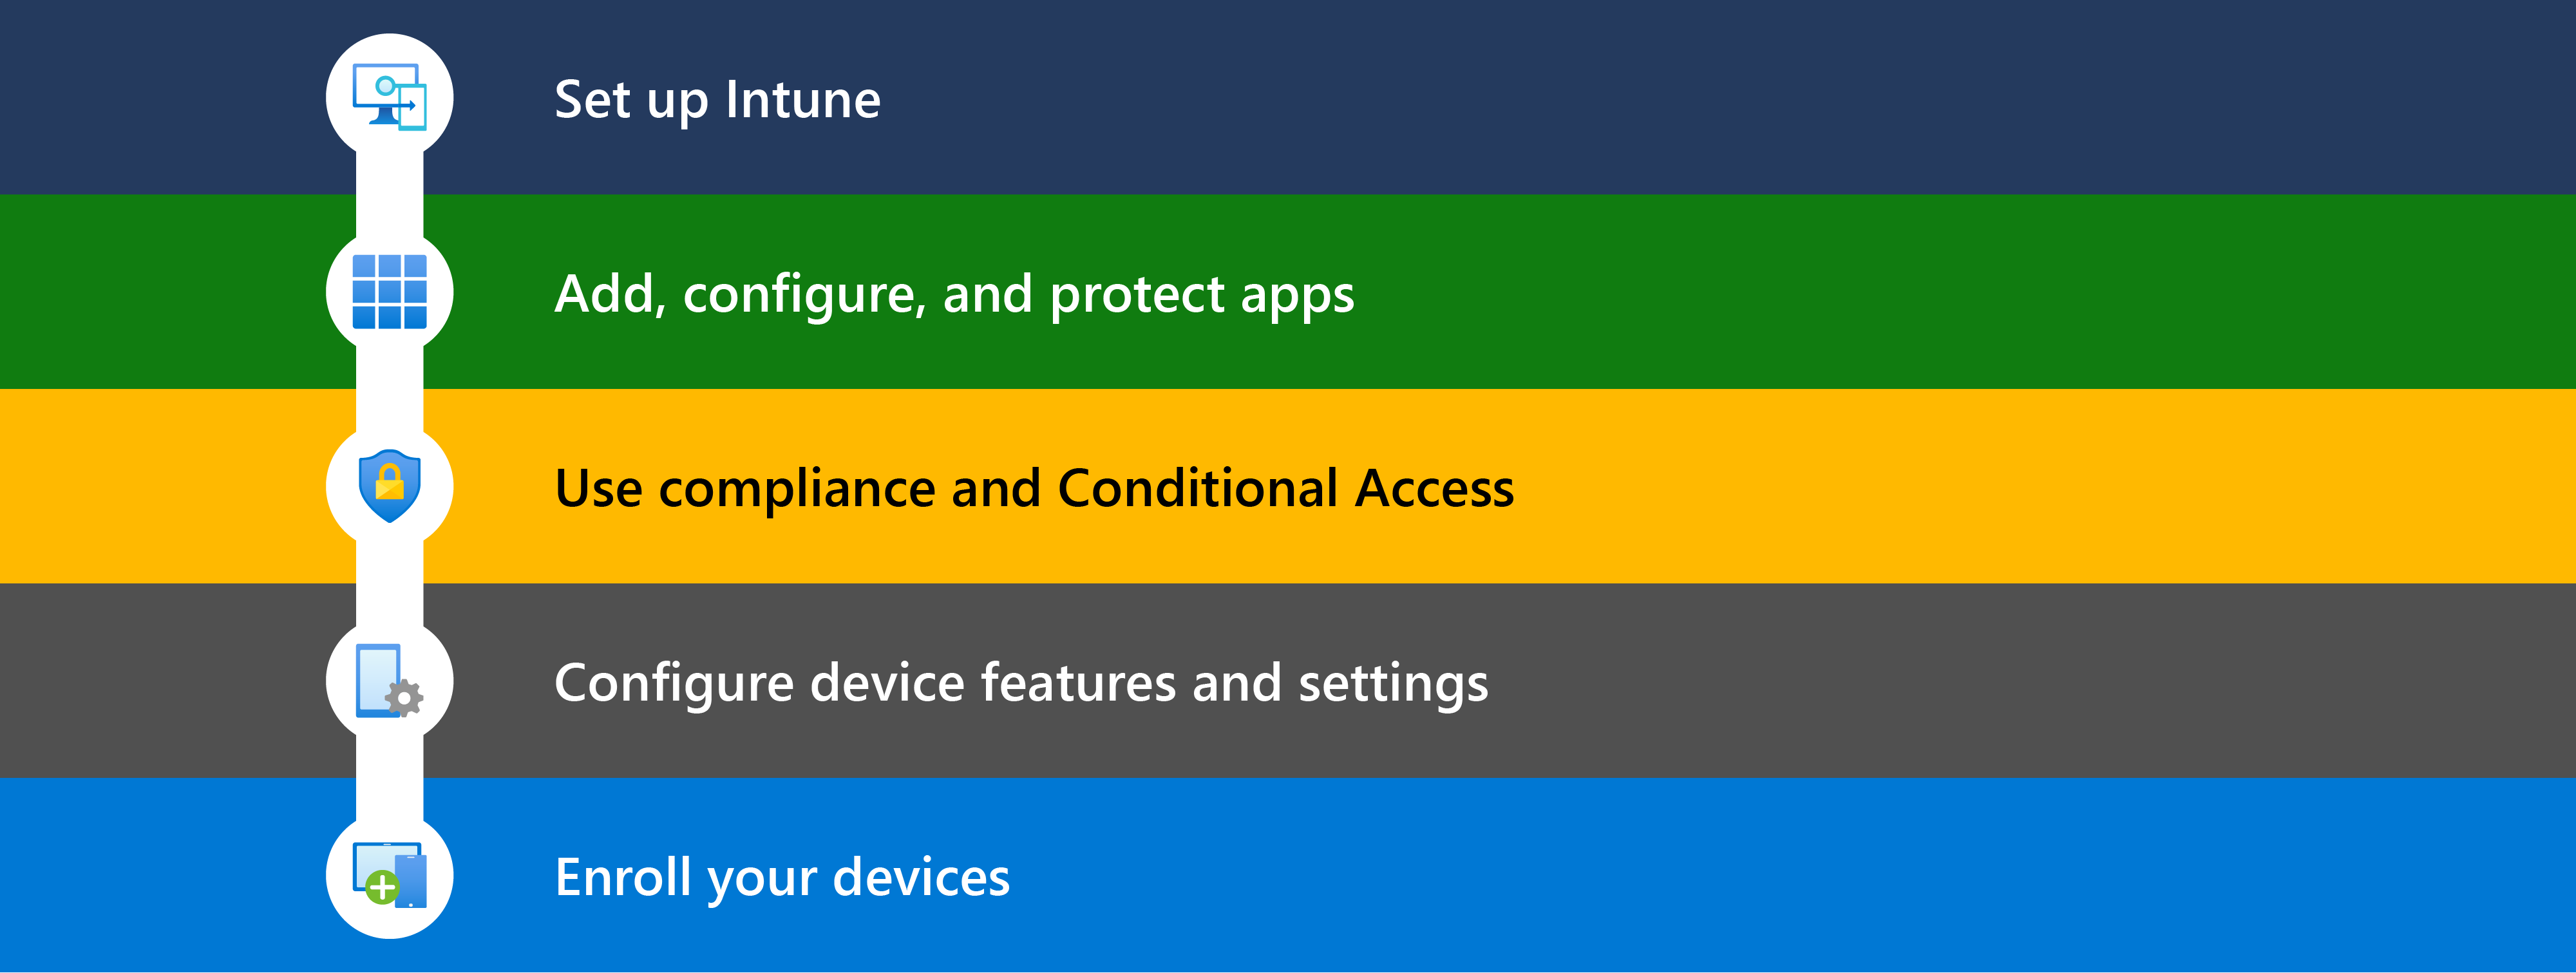 此图显示了开始使用Microsoft Intune的不同步骤，包括设置、添加应用、使用符合性 & 条件访问、配置设备功能以及注册要管理的设备。